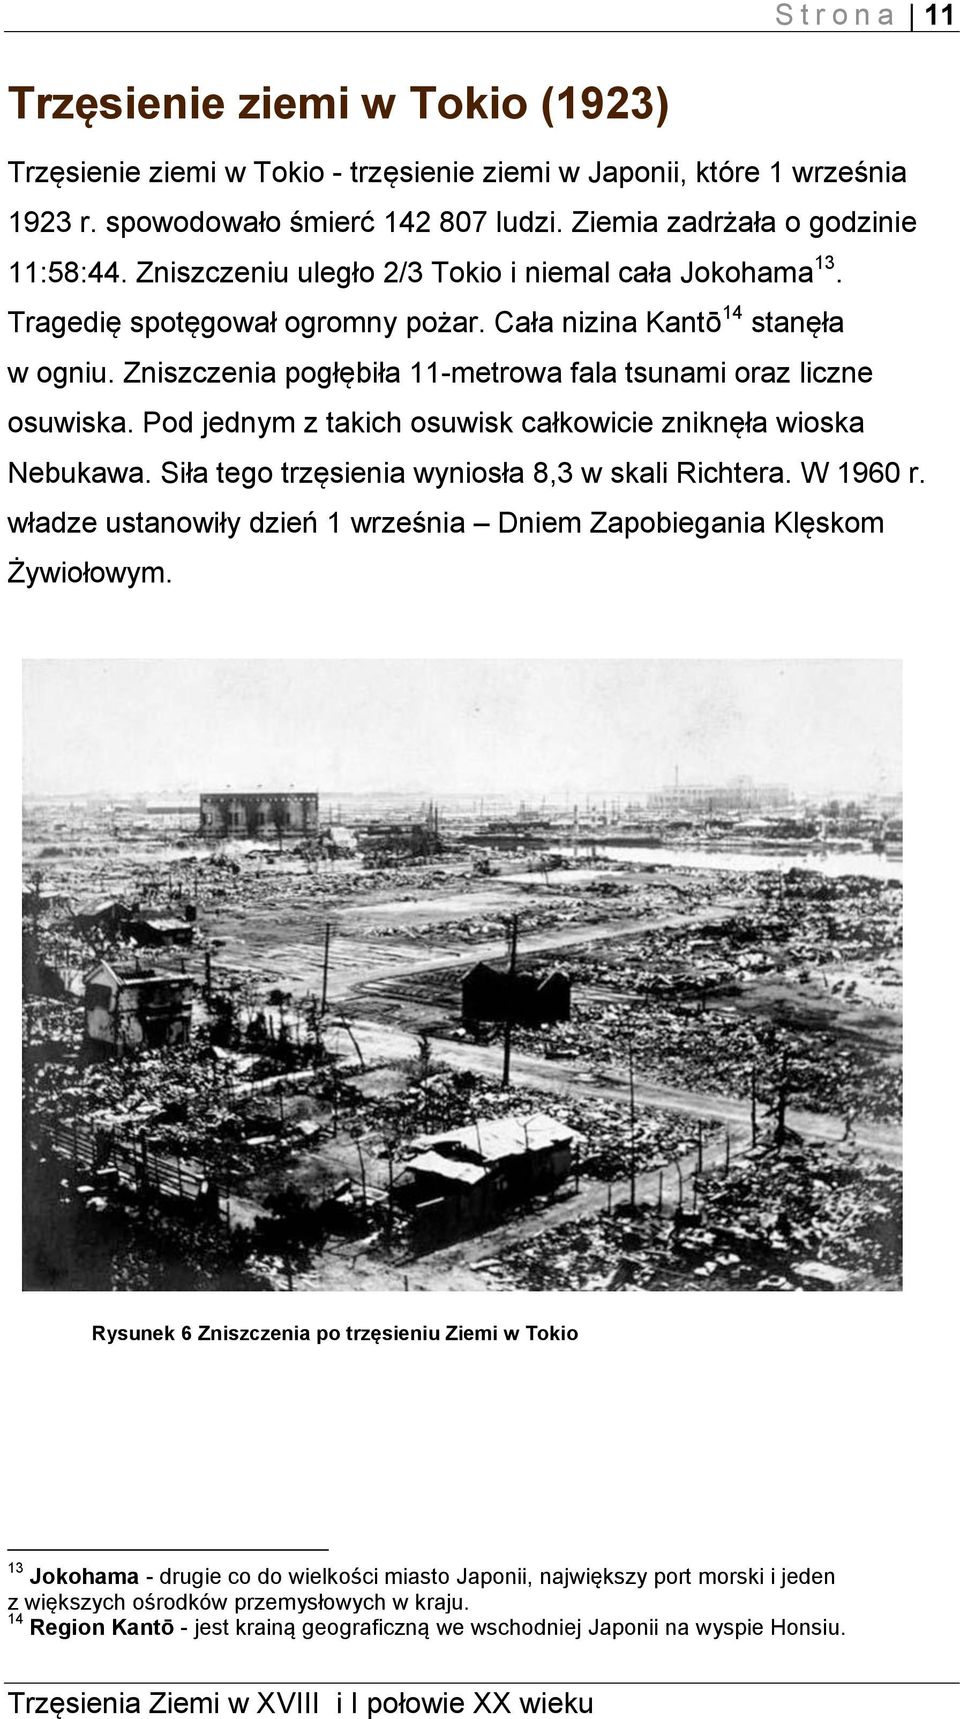 Pod jednym z takich osuwisk całkowicie zniknęła wioska Nebukawa. Siła tego trzęsienia wyniosła 8,3 w skali Richtera. W 1960 r. władze ustanowiły dzień 1 września Dniem Zapobiegania Klęskom Żywiołowym.